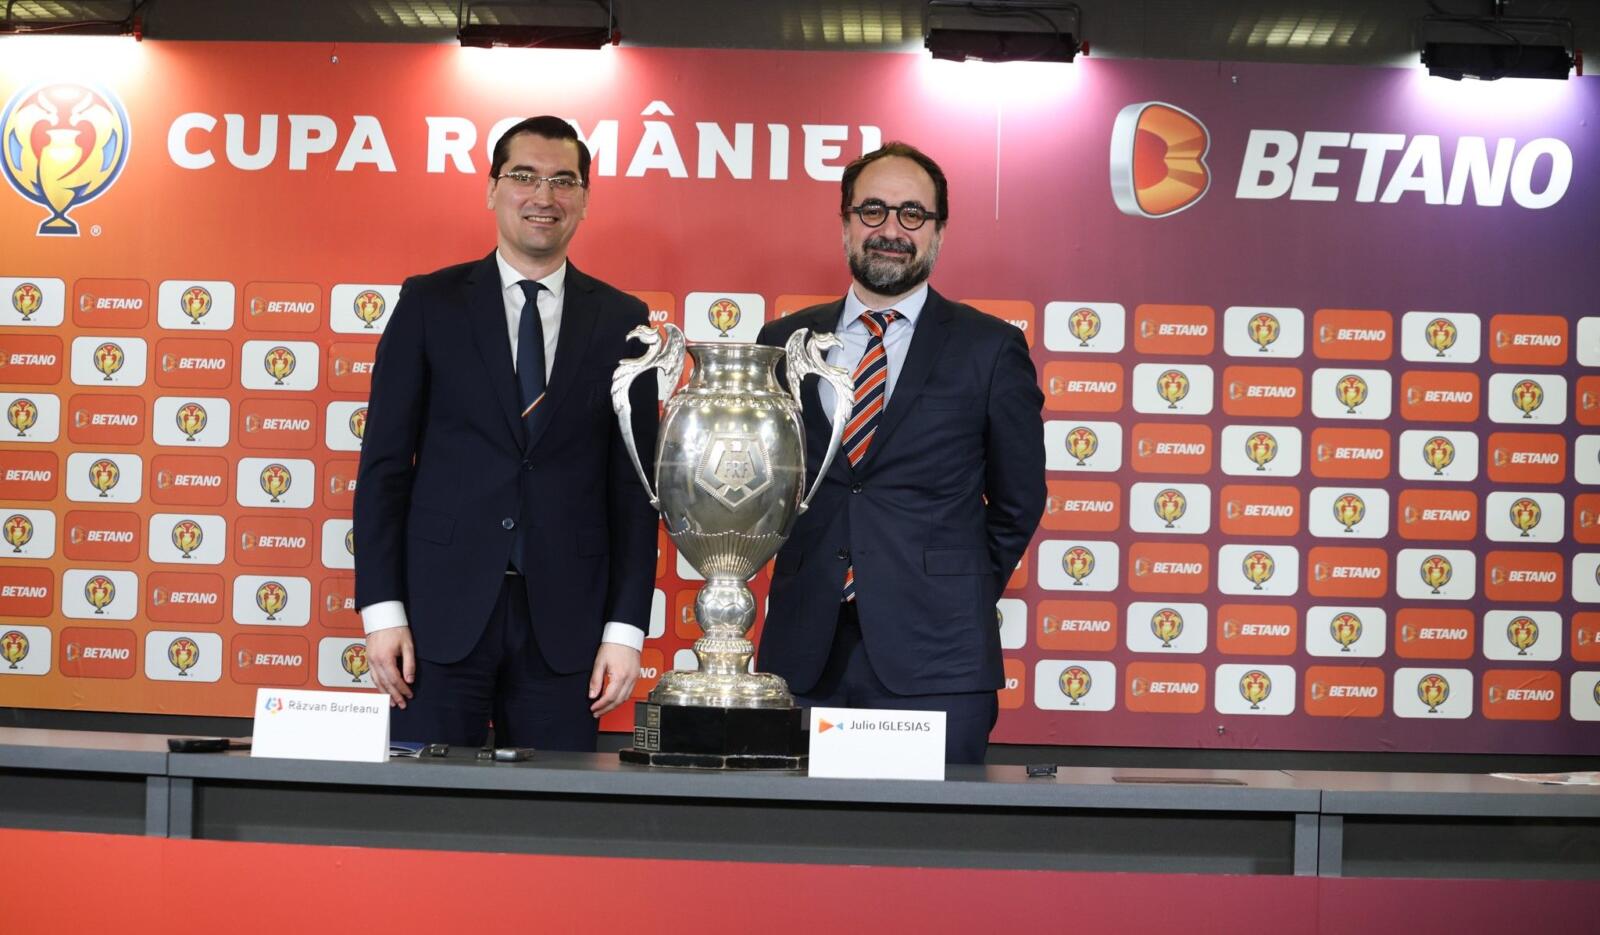 Betano baut seinen rumänischen Pokalvertrag mit einer Verlängerung um sechs Jahre aus